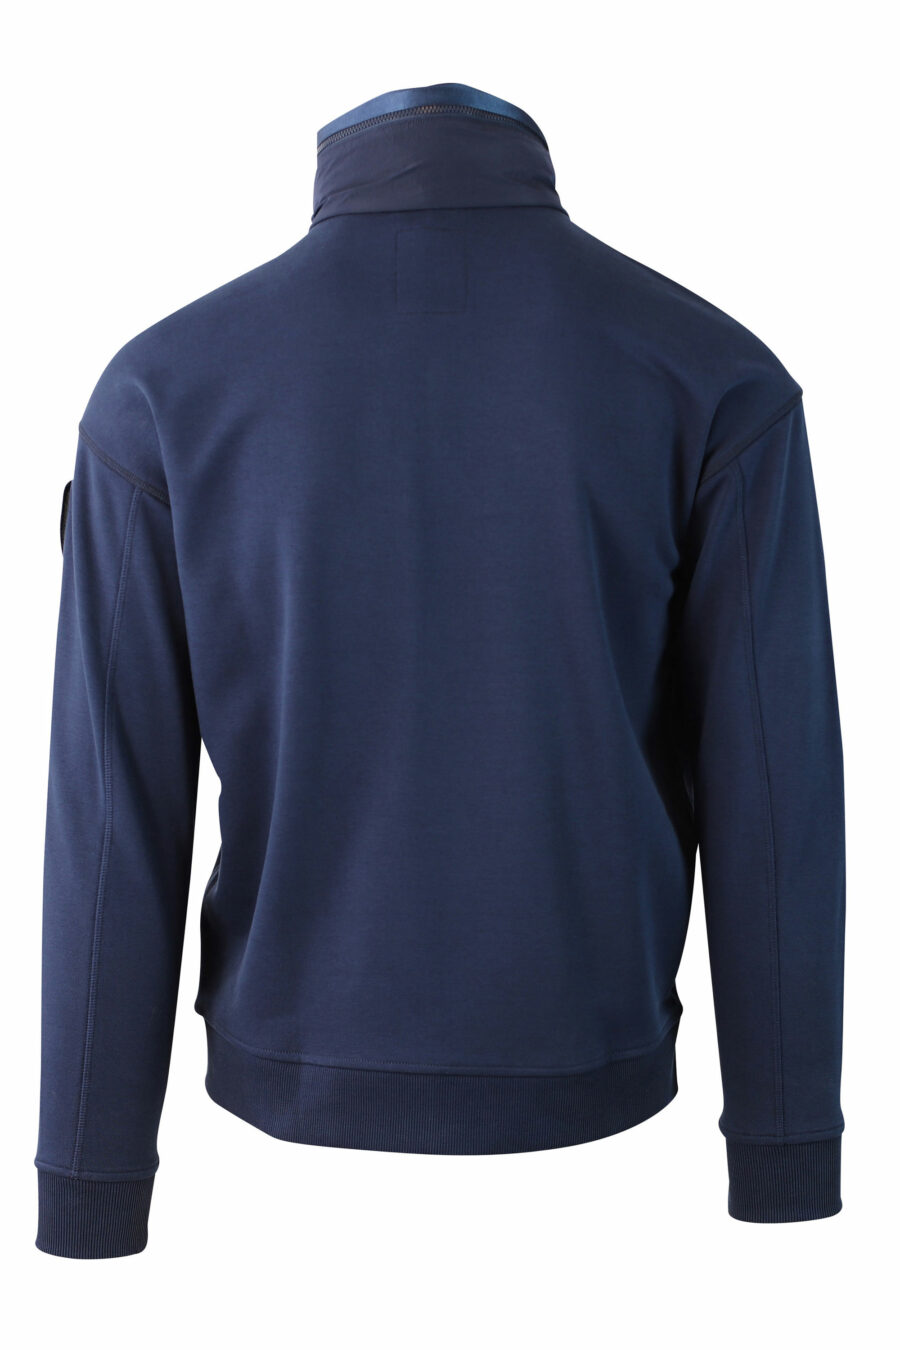 Sweat-shirt bleu en polaire avec fermeture éclair et écusson - IMG 0029 1